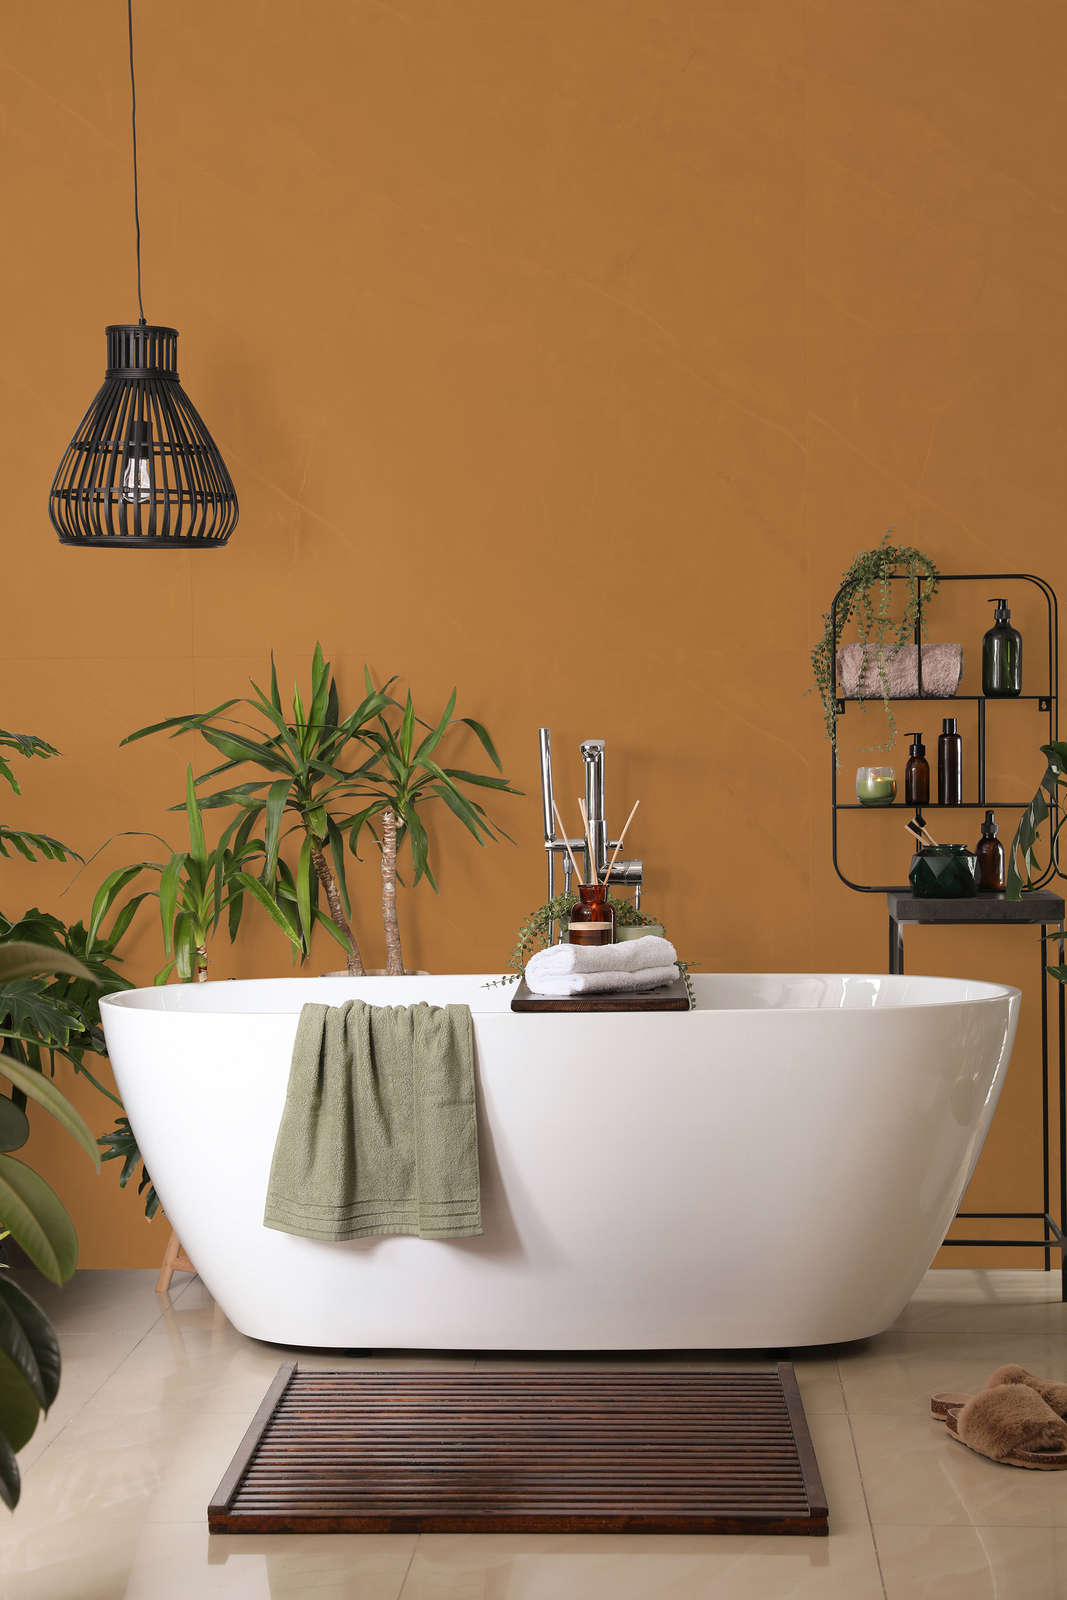             Pittura murale Premium marrone chiaro forte »Beige Orange/Sassy Saffron« NW814 – 5 litri
        